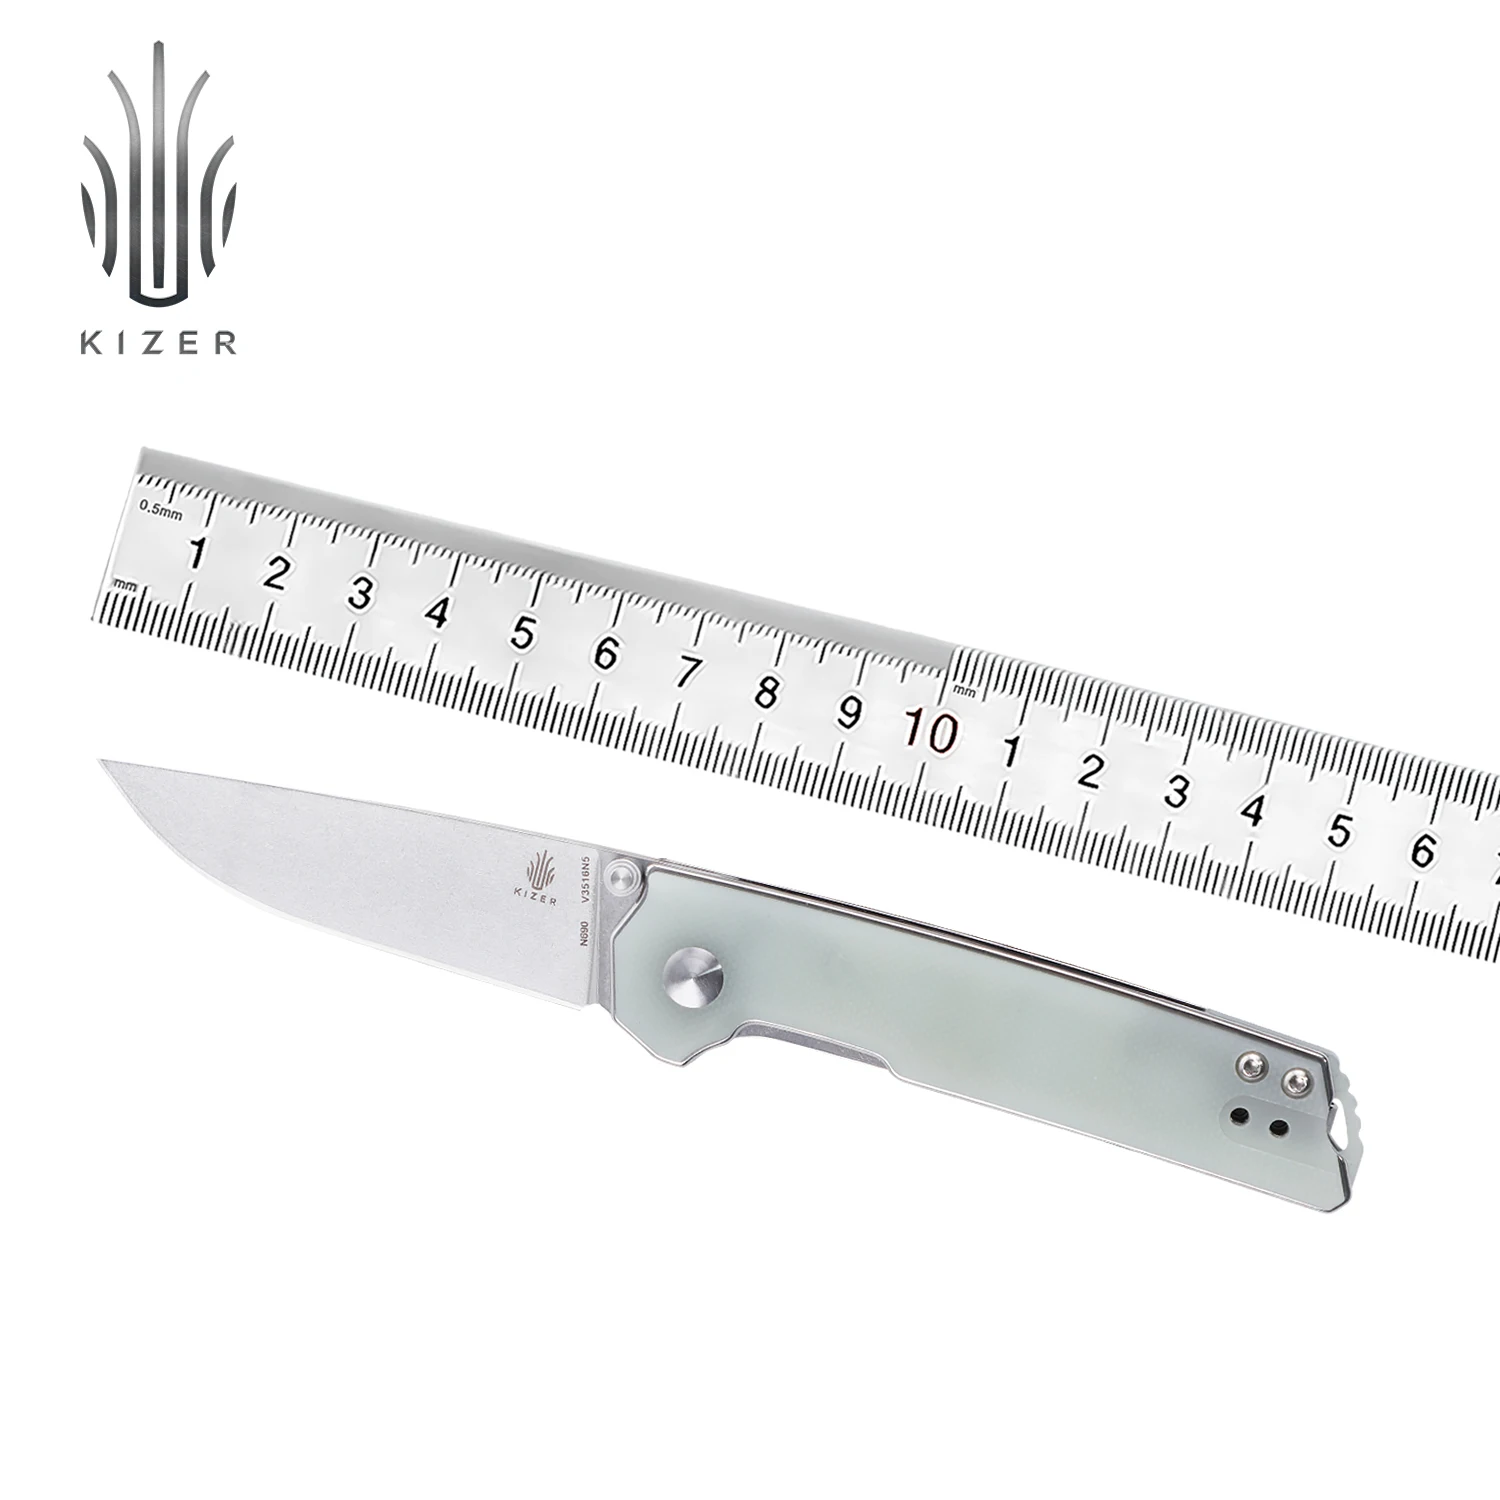 Kizer Taktische Messer Domin Mini V3516N5 2021 Neue Transparente Farbe G10 Griff mit N690 Stahl Klinge Outdoor Bushcraft Messer